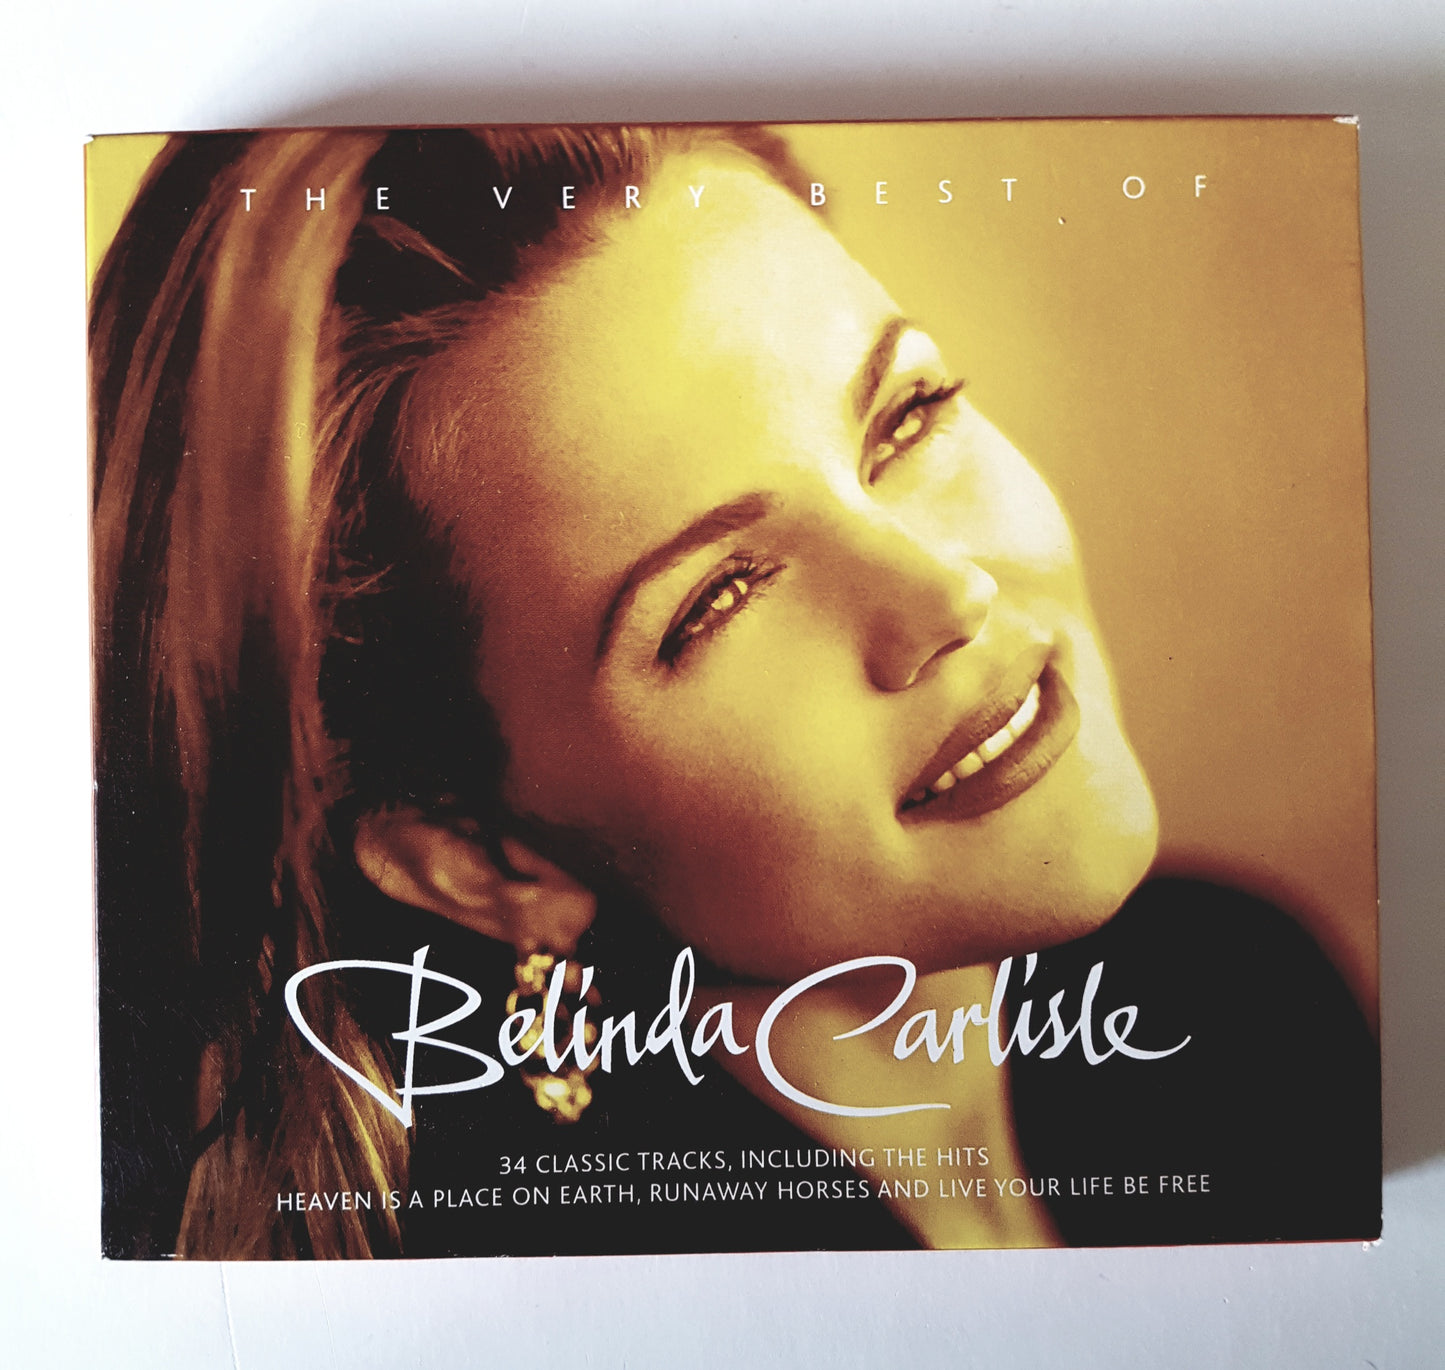 Belinda Carlisle, The Very Best Of (2CD's)